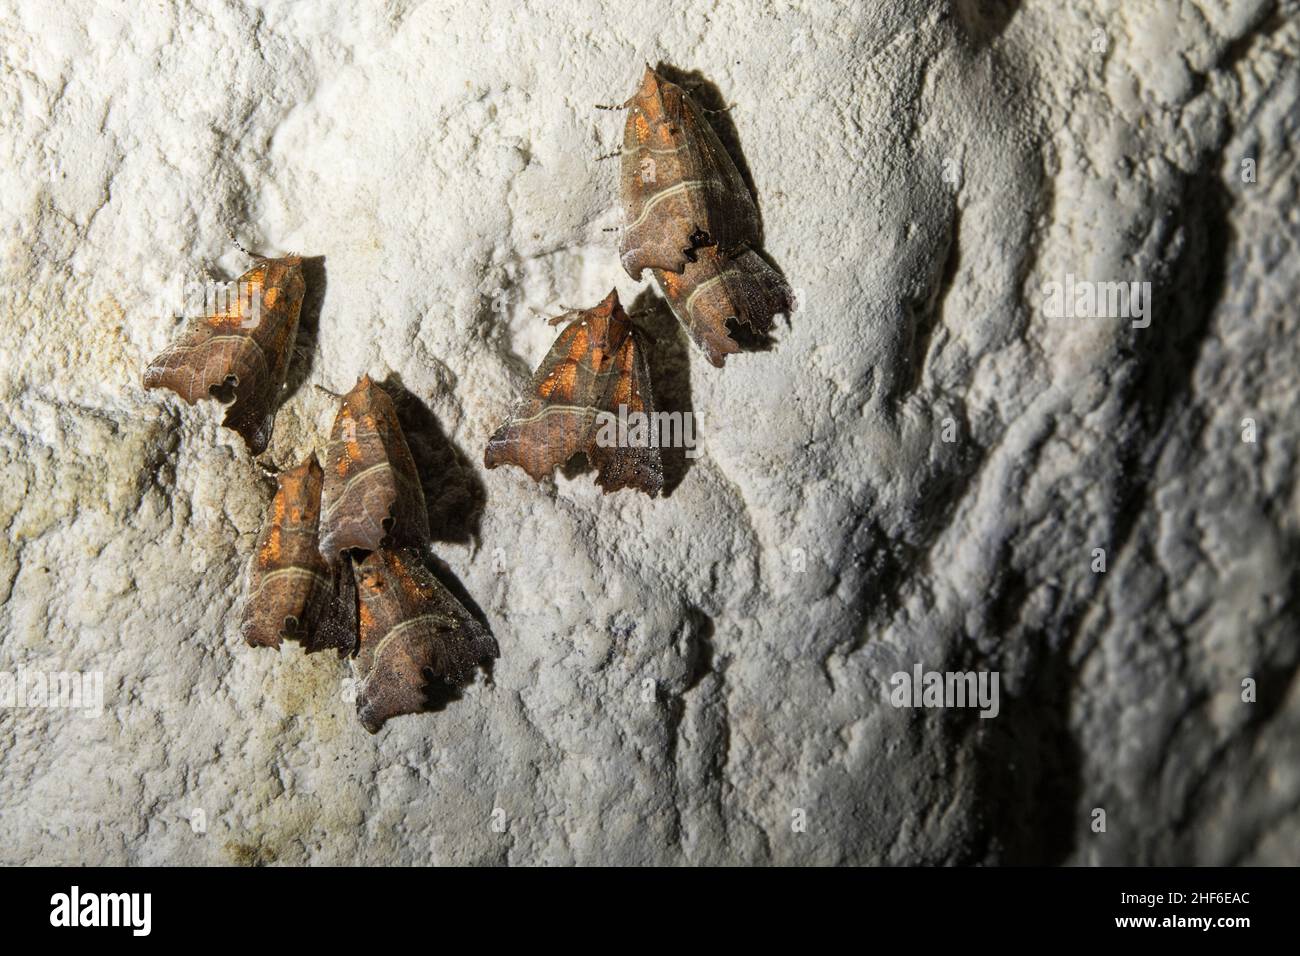 Papillon dans une grotte, France Banque D'Images